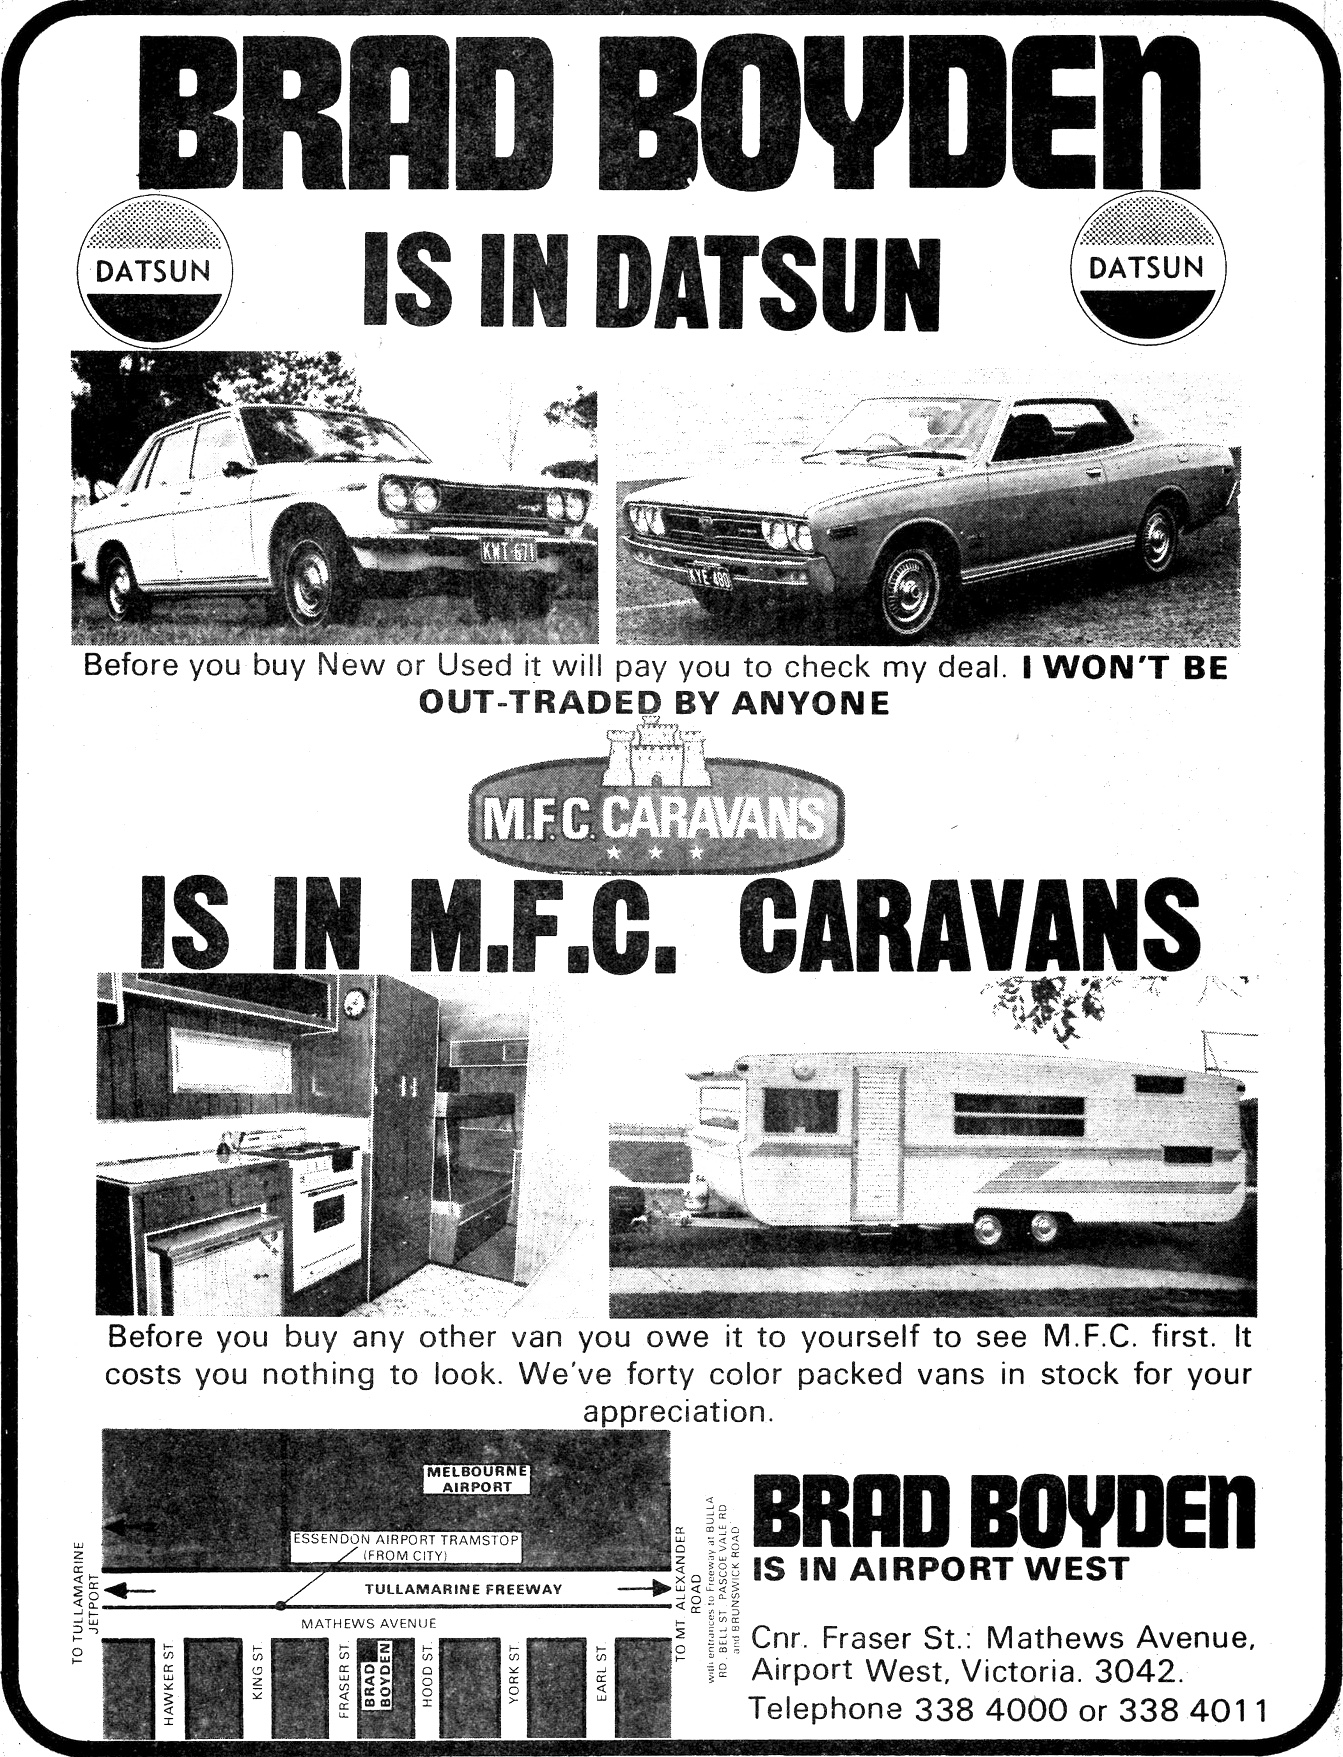 1972 Datsun Brad Boyden Car Yard